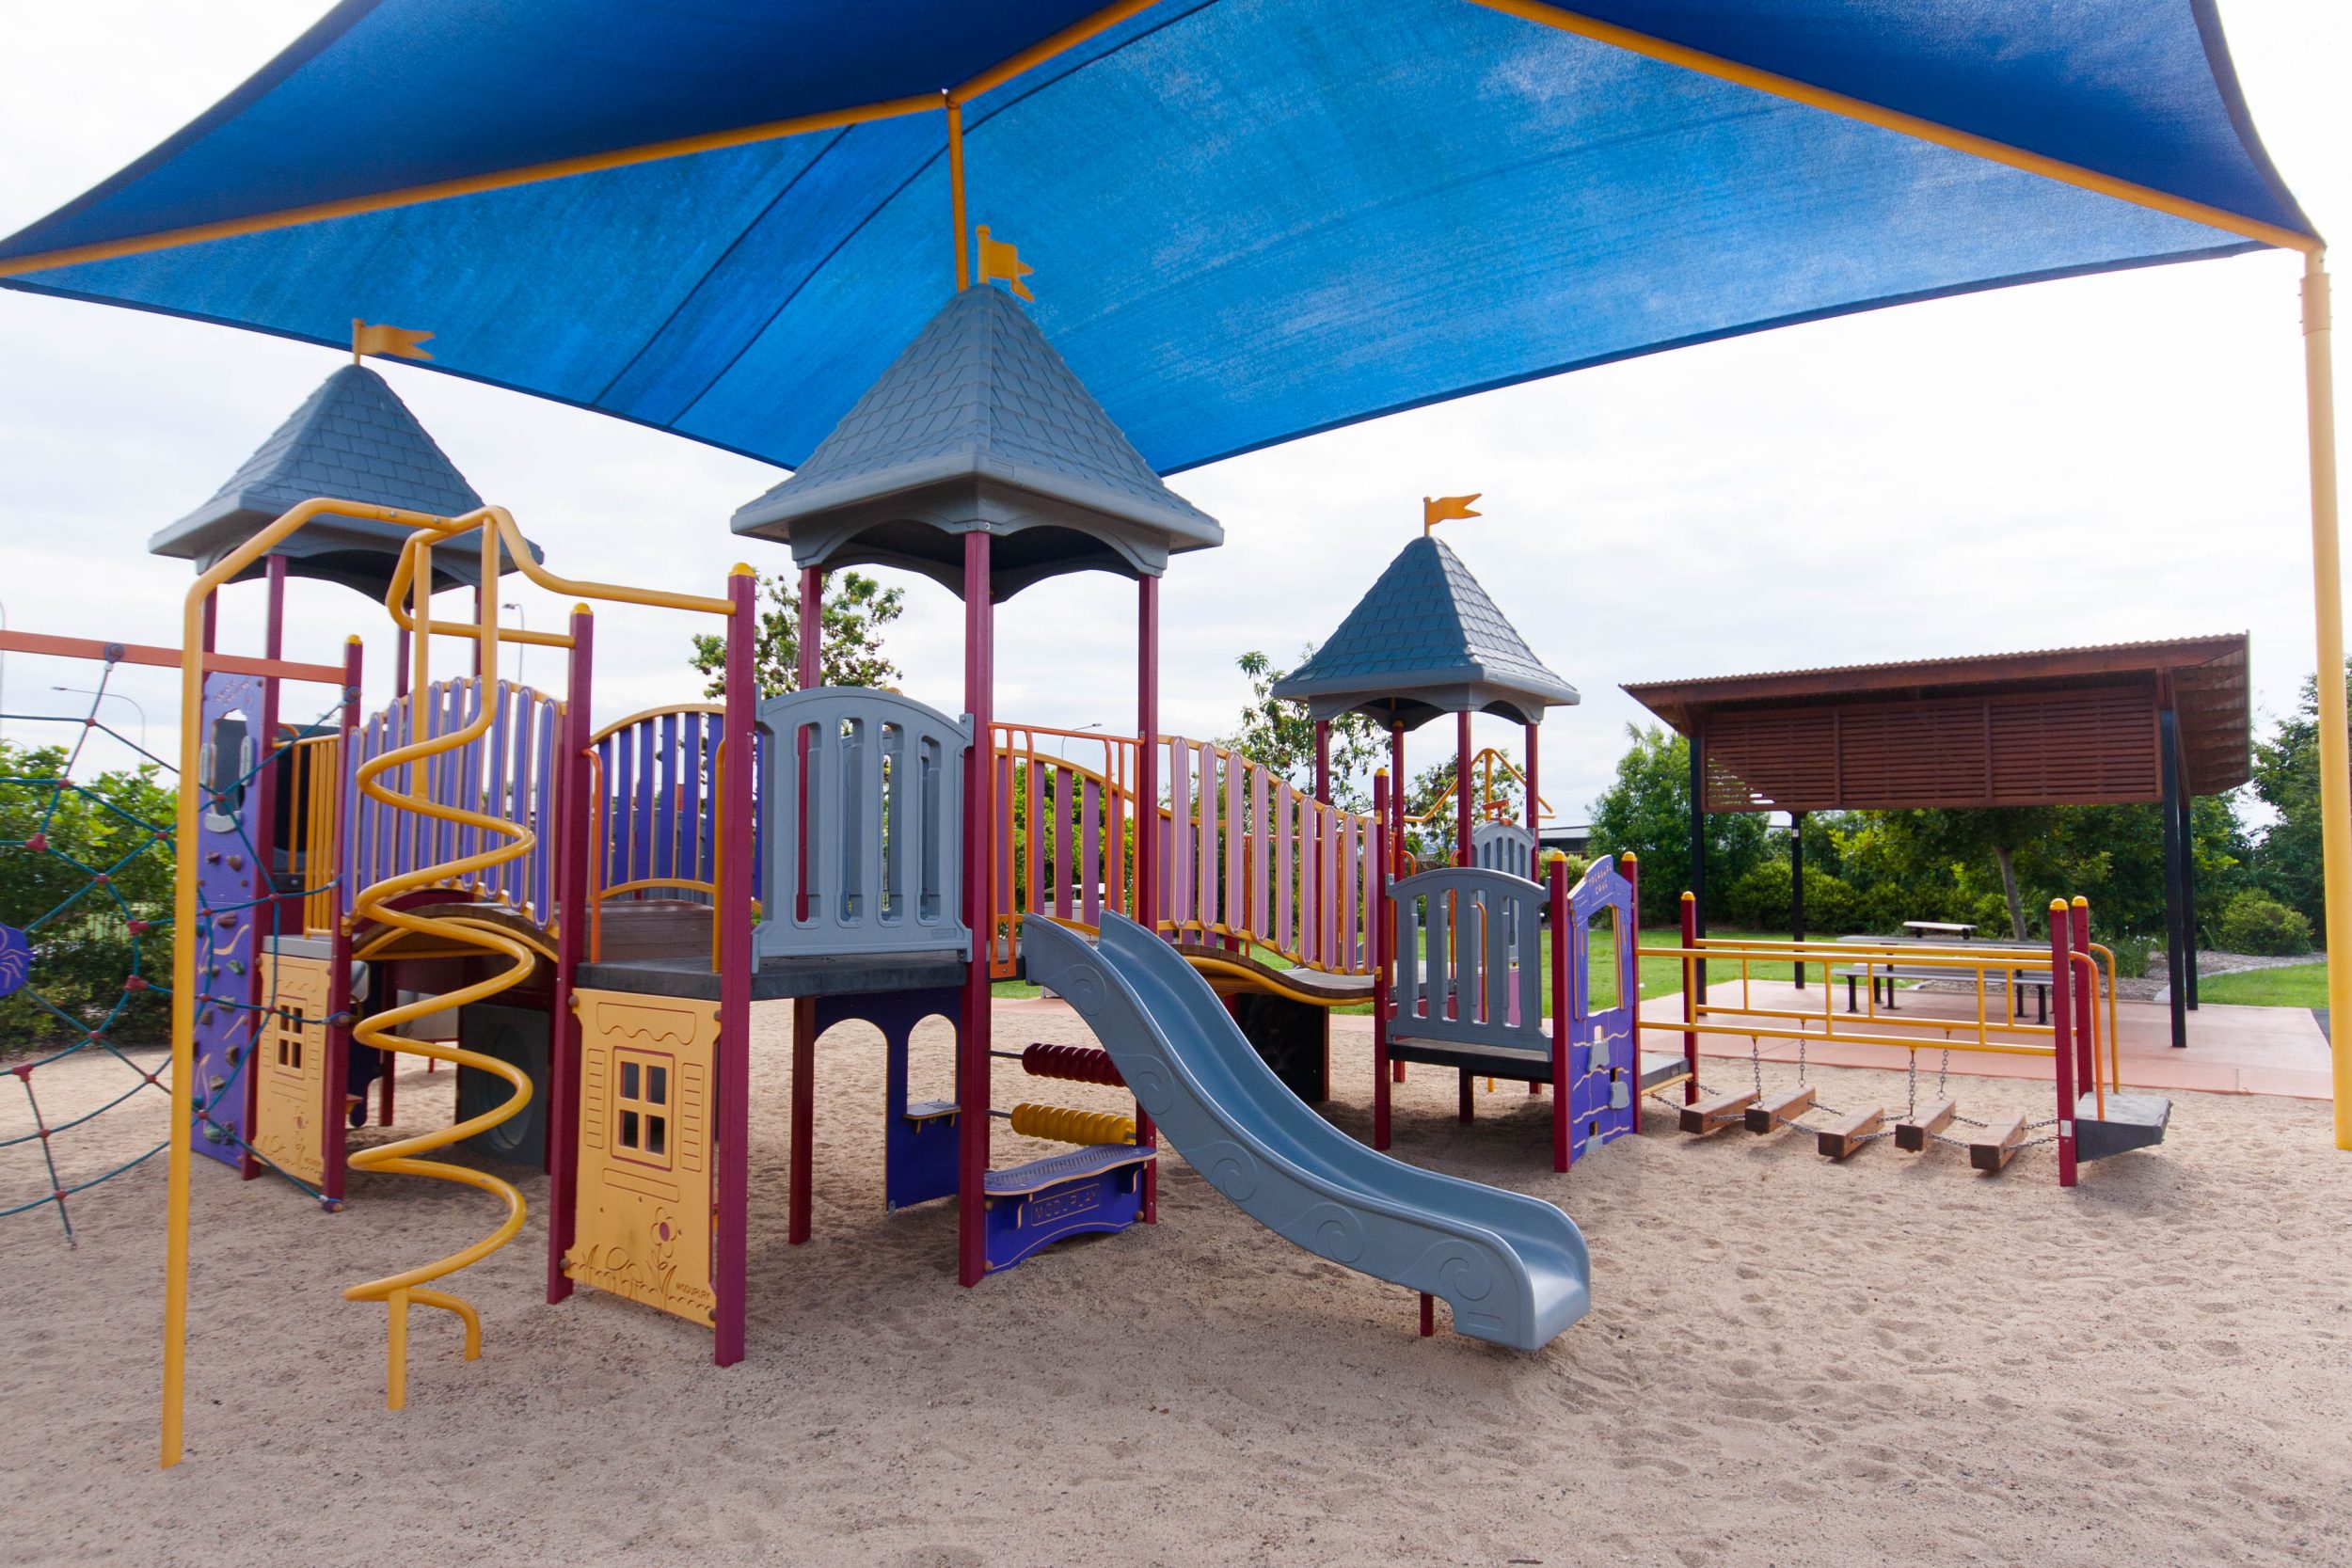 Children's Playground in park